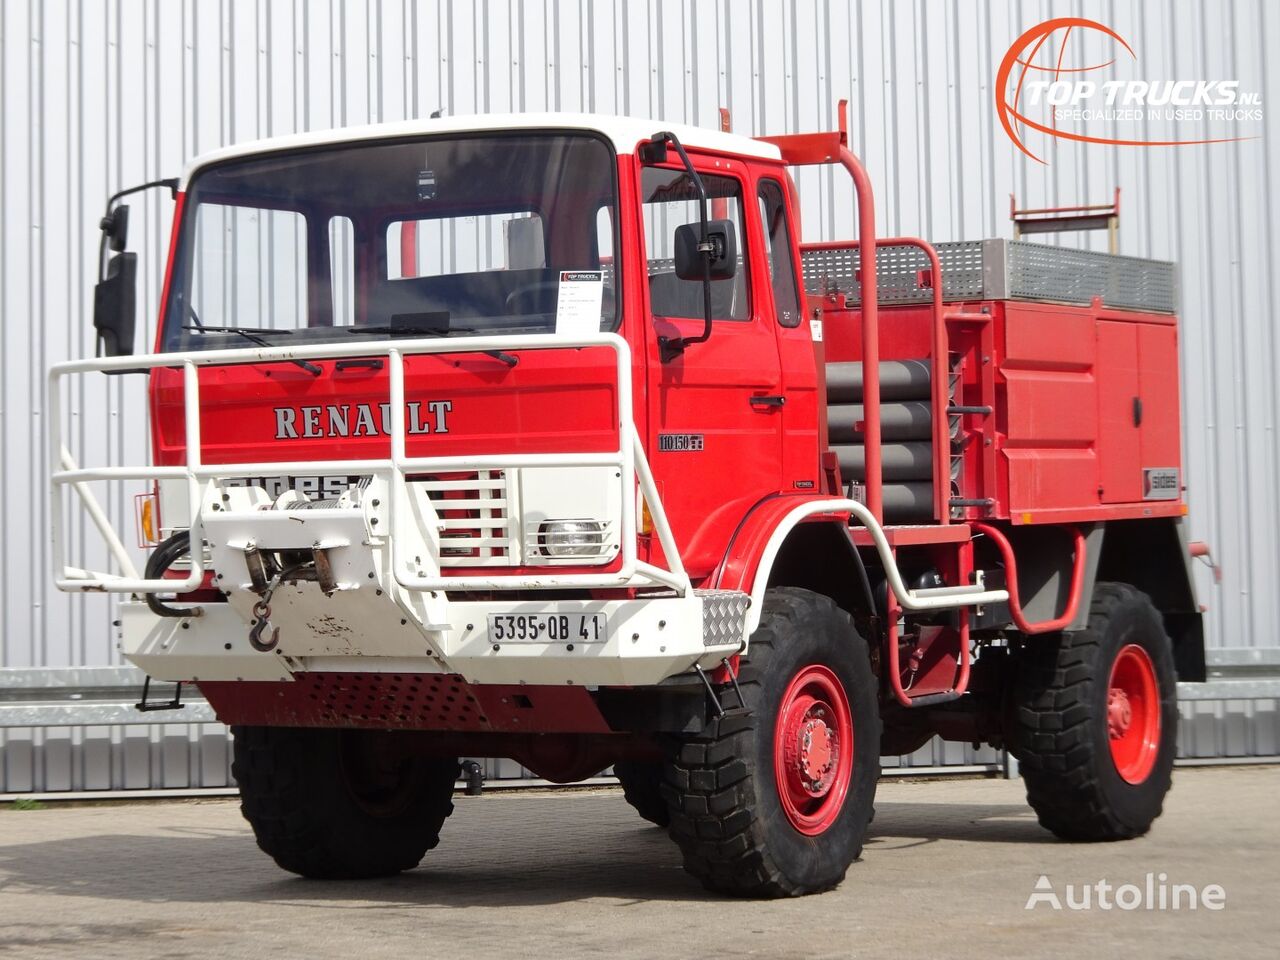 camion de pompiers Renault 110-150 4x4 -Feuerwehr, Fire brigade -3.000 ltr watertank - 5t